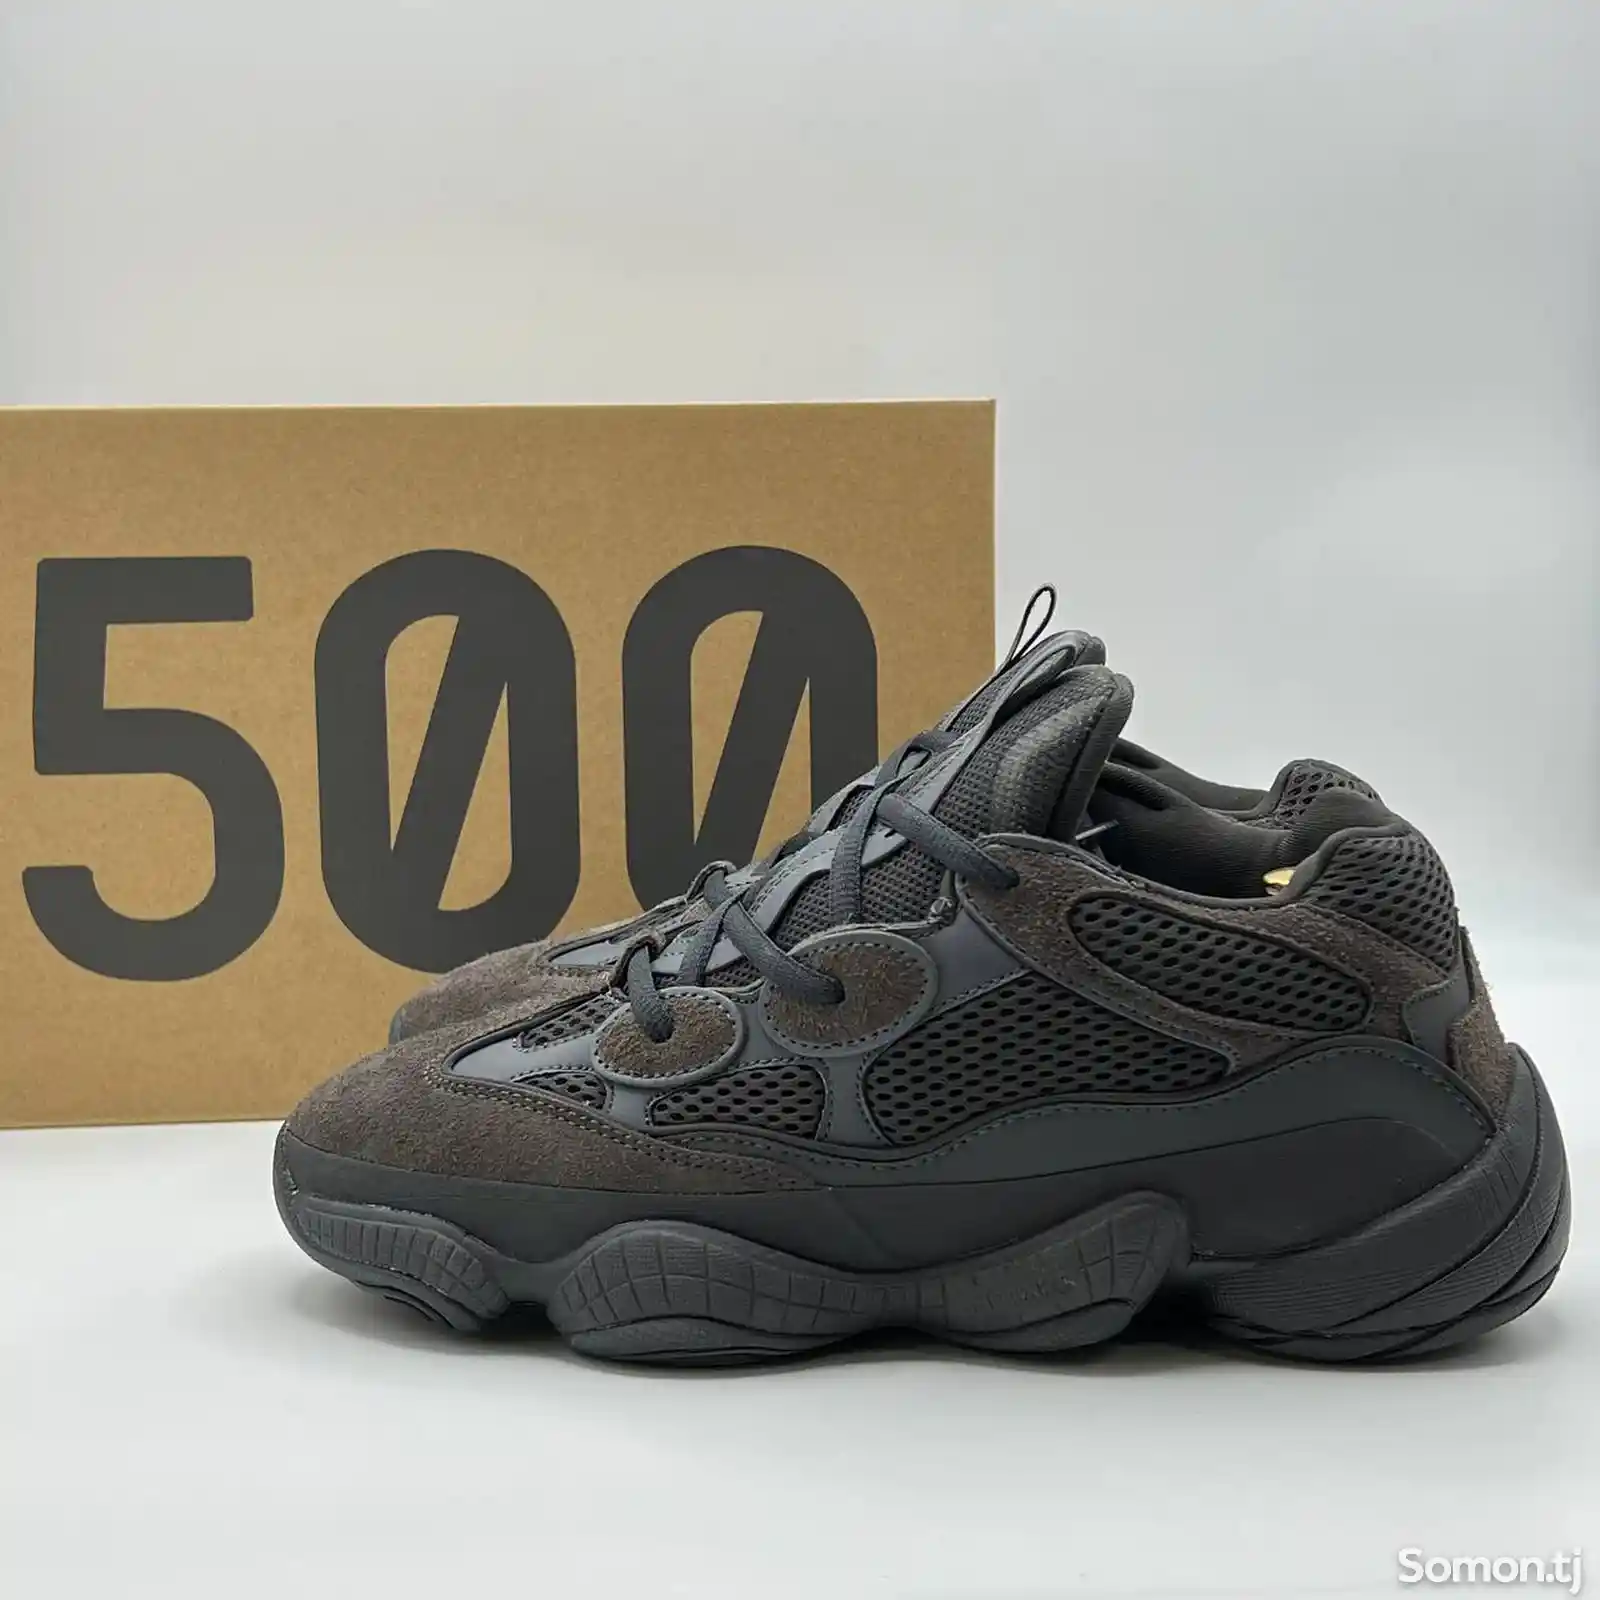 Adidas Yeezy 500-4